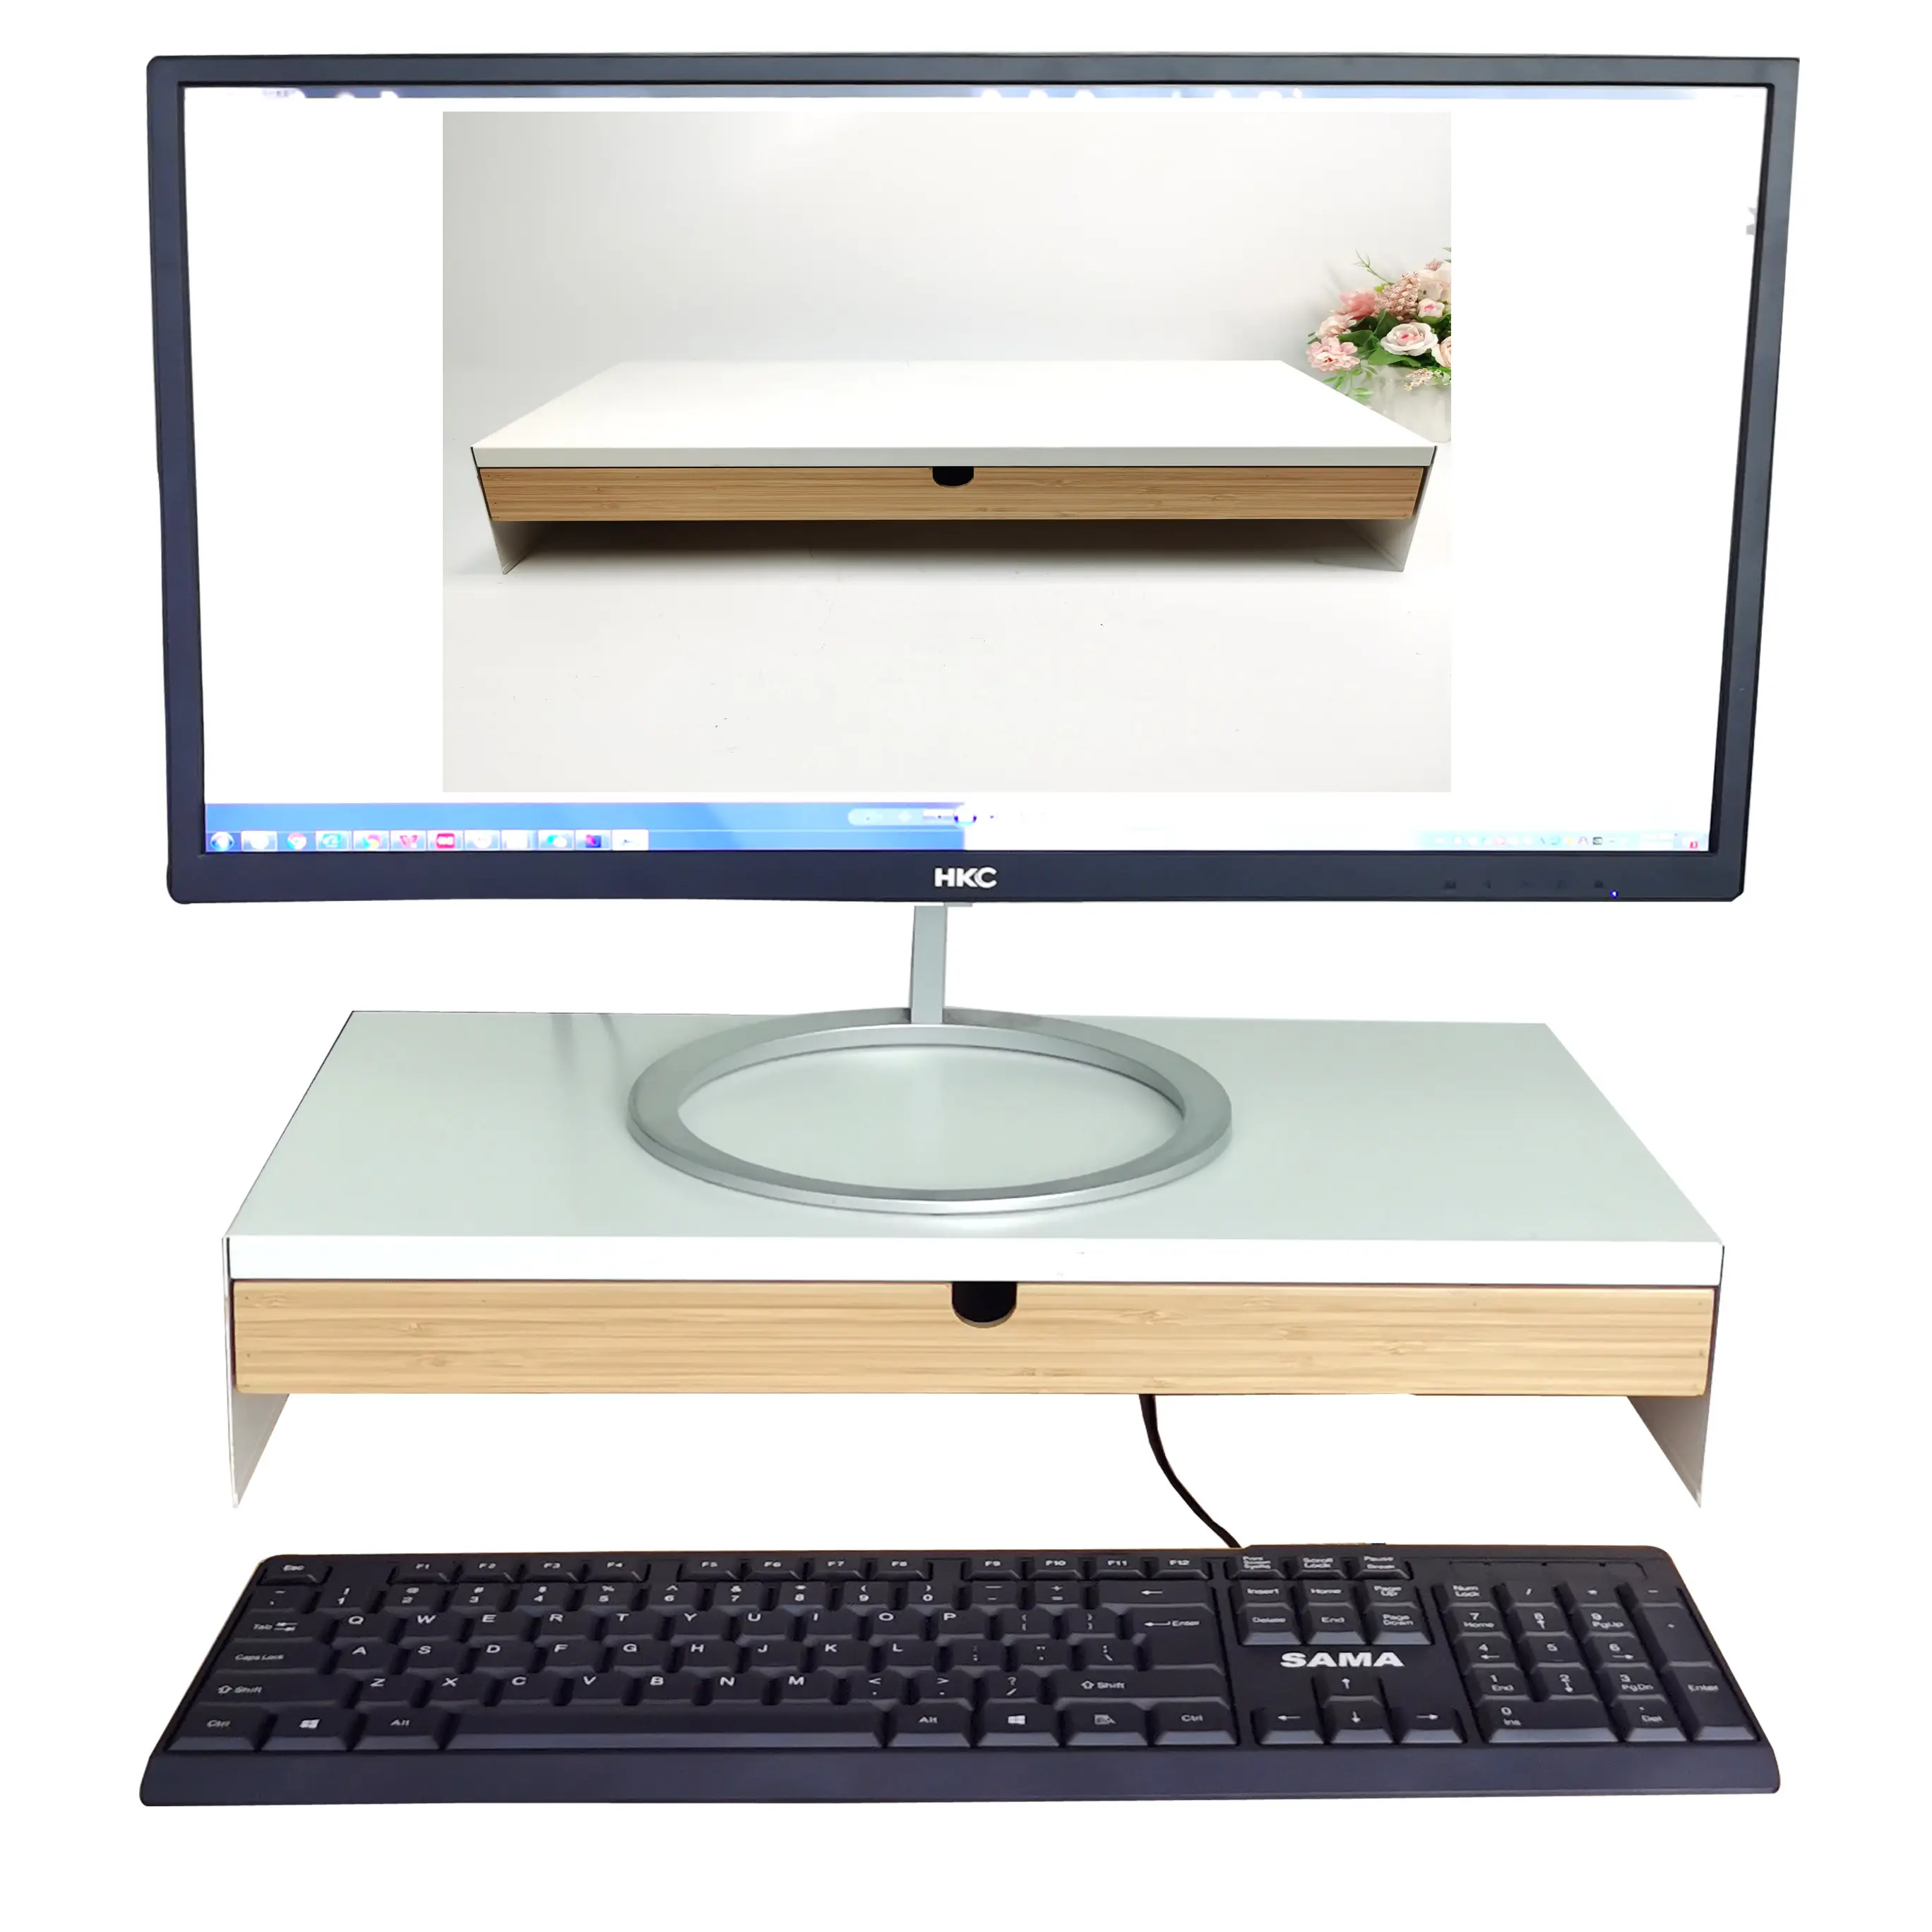 متعددة الوظائف الصلبة الخيزران مكتب للحاسوب شخصي مستويين حامل شاشة الناهض مع وحدة تخزين قابلة للتعديل اكسسوارات للكمبيوتر مكتب